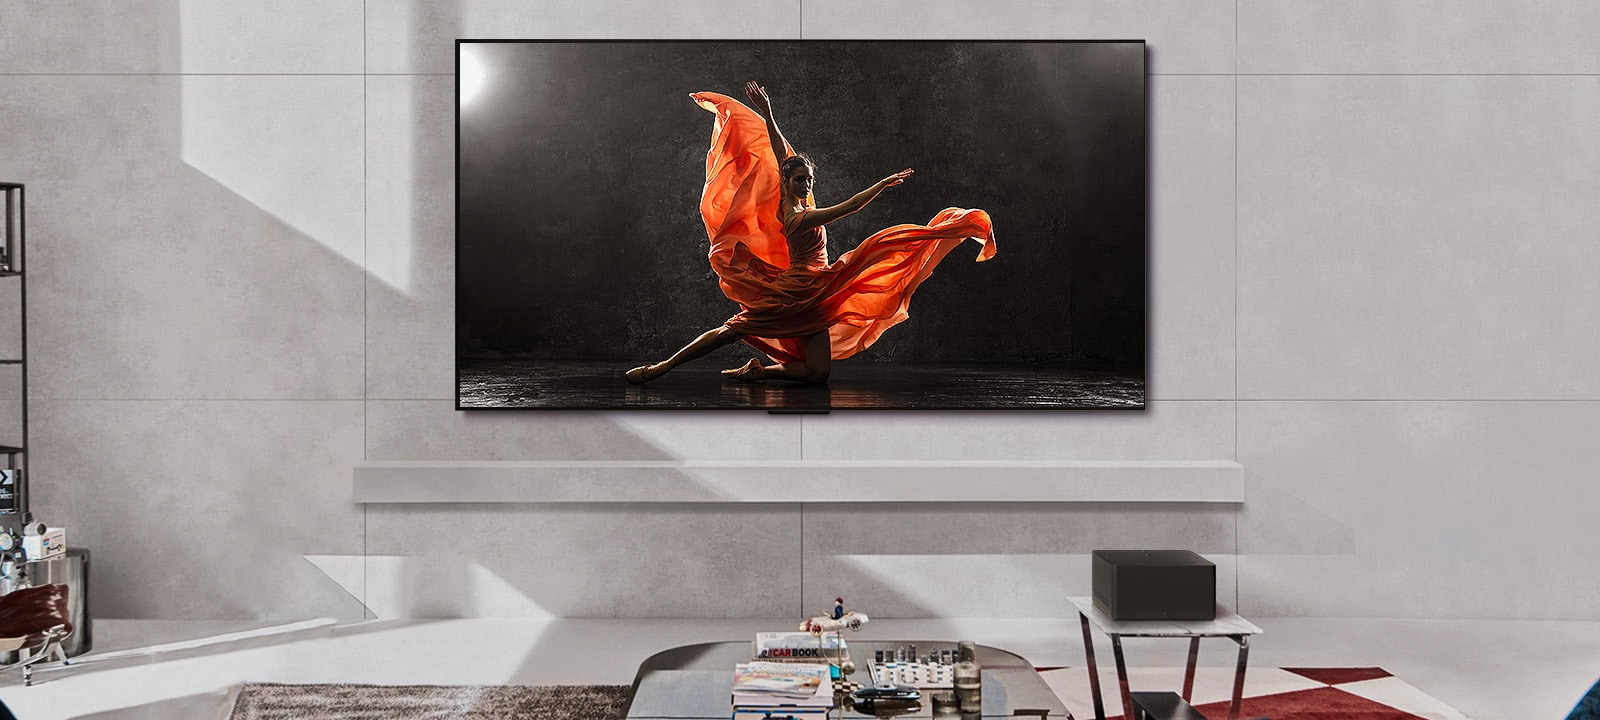 LG SIGNATURE OLED M4 y LG Soundbar en un espacio moderno durante el día. La imagen en pantalla de una bailarina en un escenario oscuro se muestra con los niveles de brillo ideales.